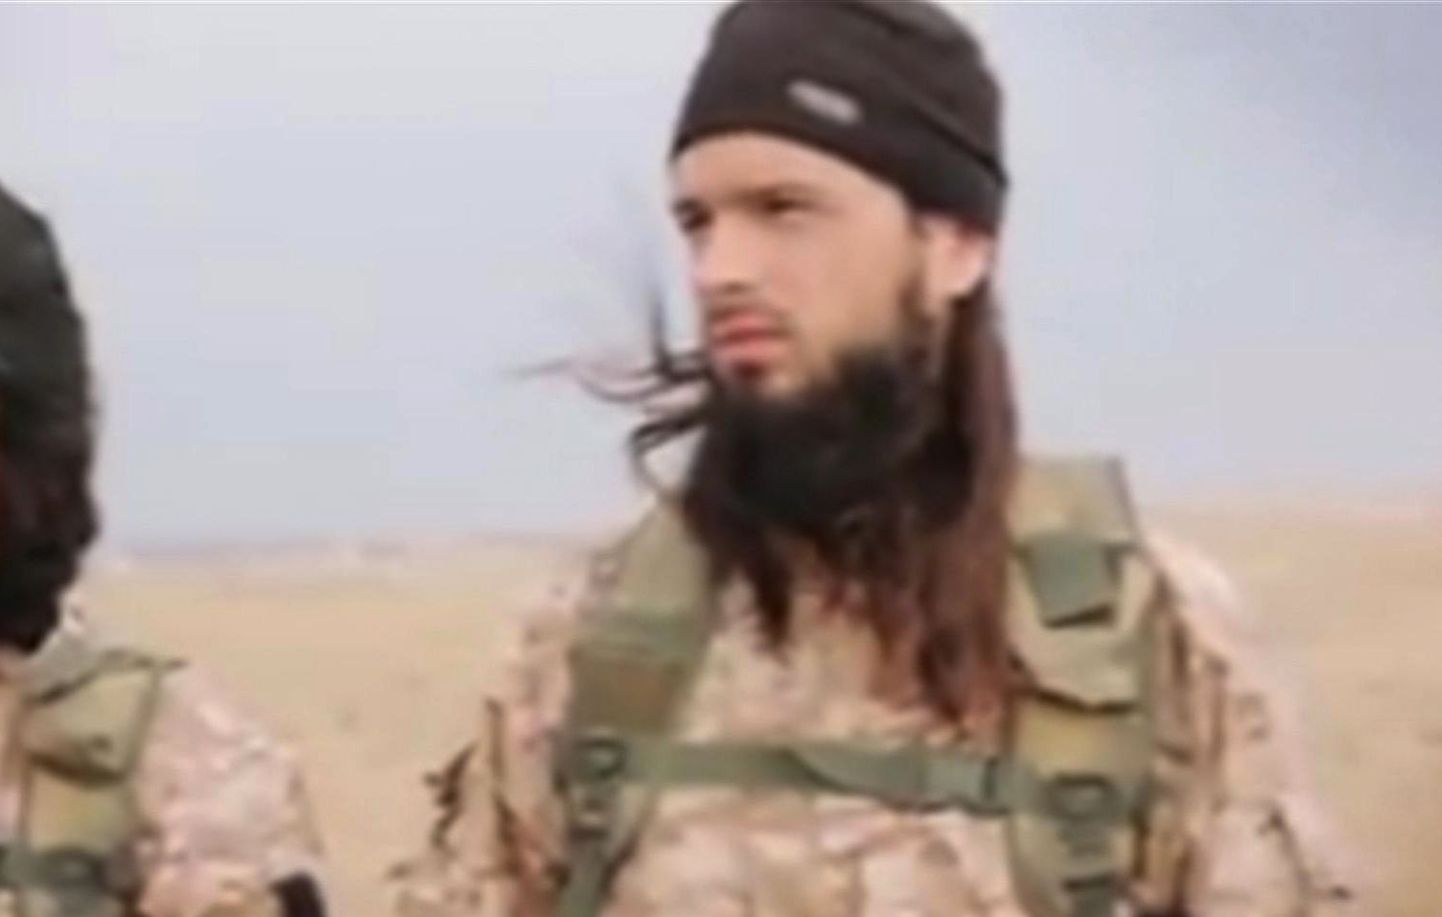 Nädal tagasi astus üks prantslasest nooruk - 22-aastane Maxime Hauchard üles Islamiriigi võikal hukkamisvideol.